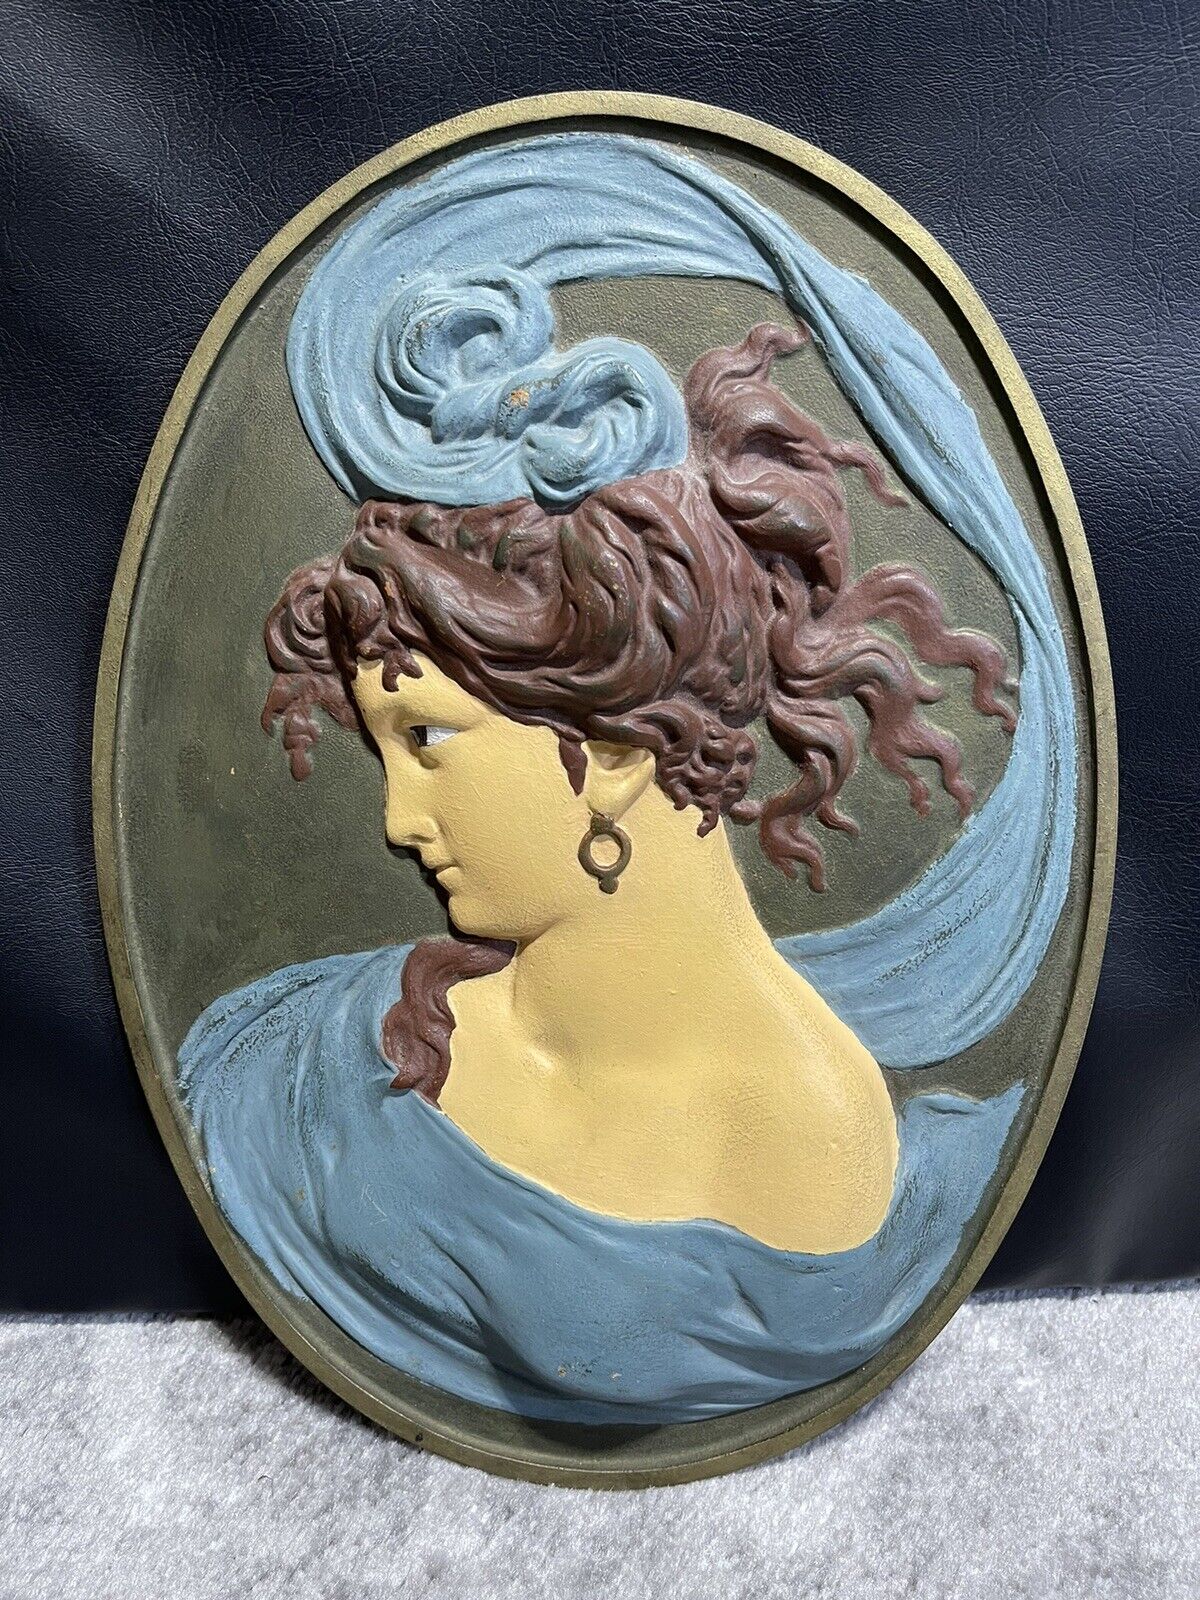 ANTIQUE 1821 BRADLEY & HUBBARD ART NOUVEAU LADY BUST CAST IRON WALL PLAQUE